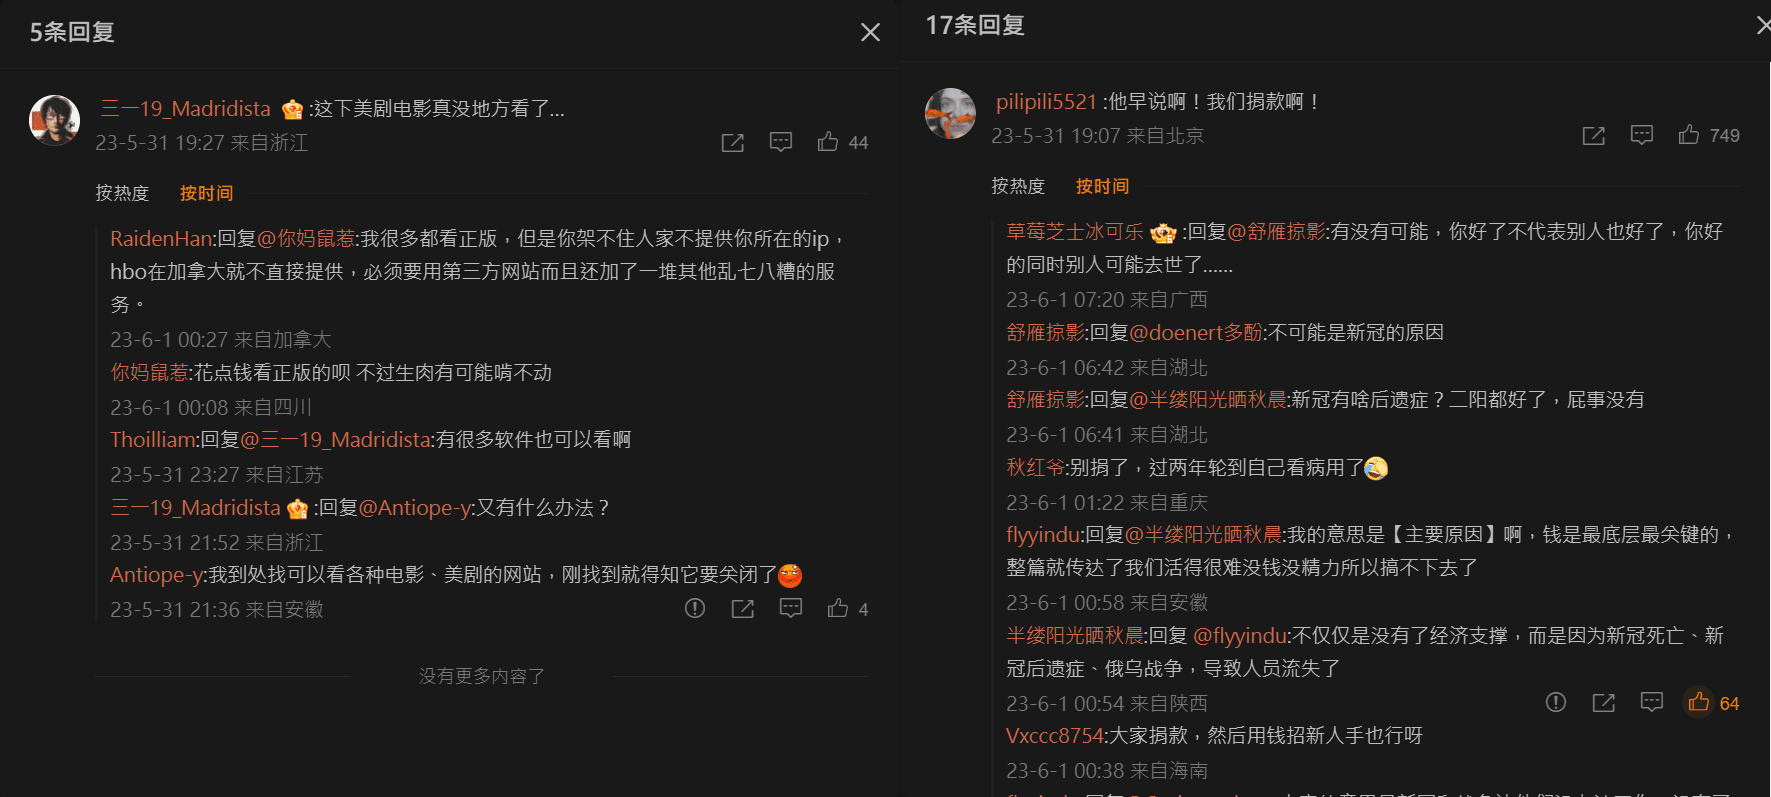 RARBG關站，中國網友難接受，喊願意捐錢。（微博）